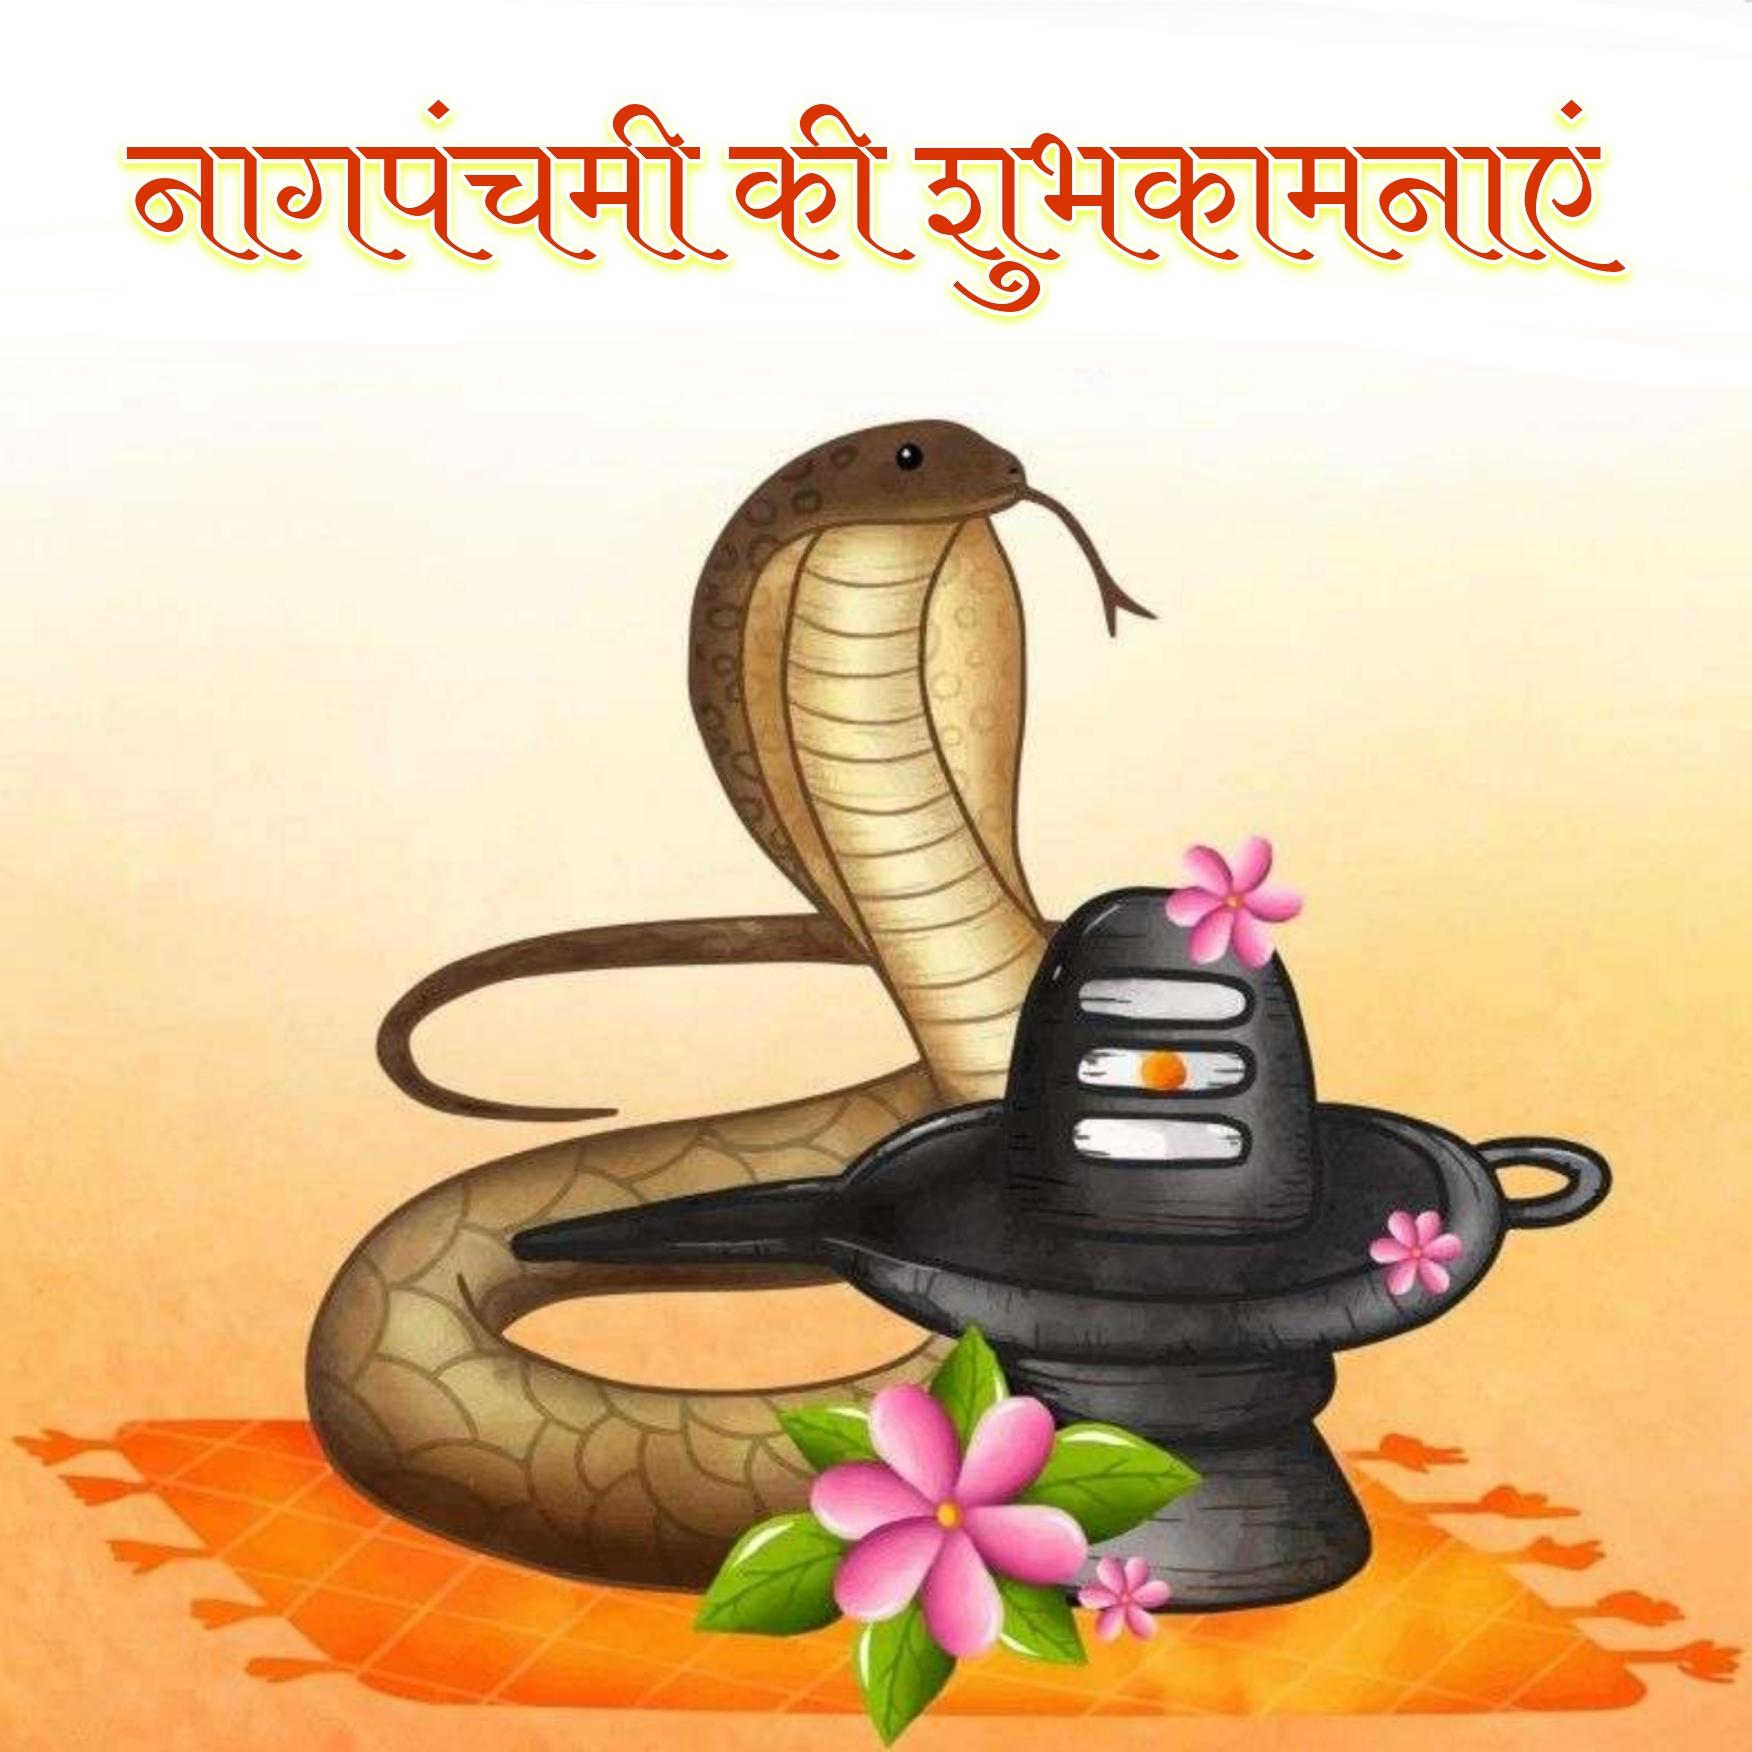 Happy Nag Panchami Shubhkamnaye Photos in Hindi